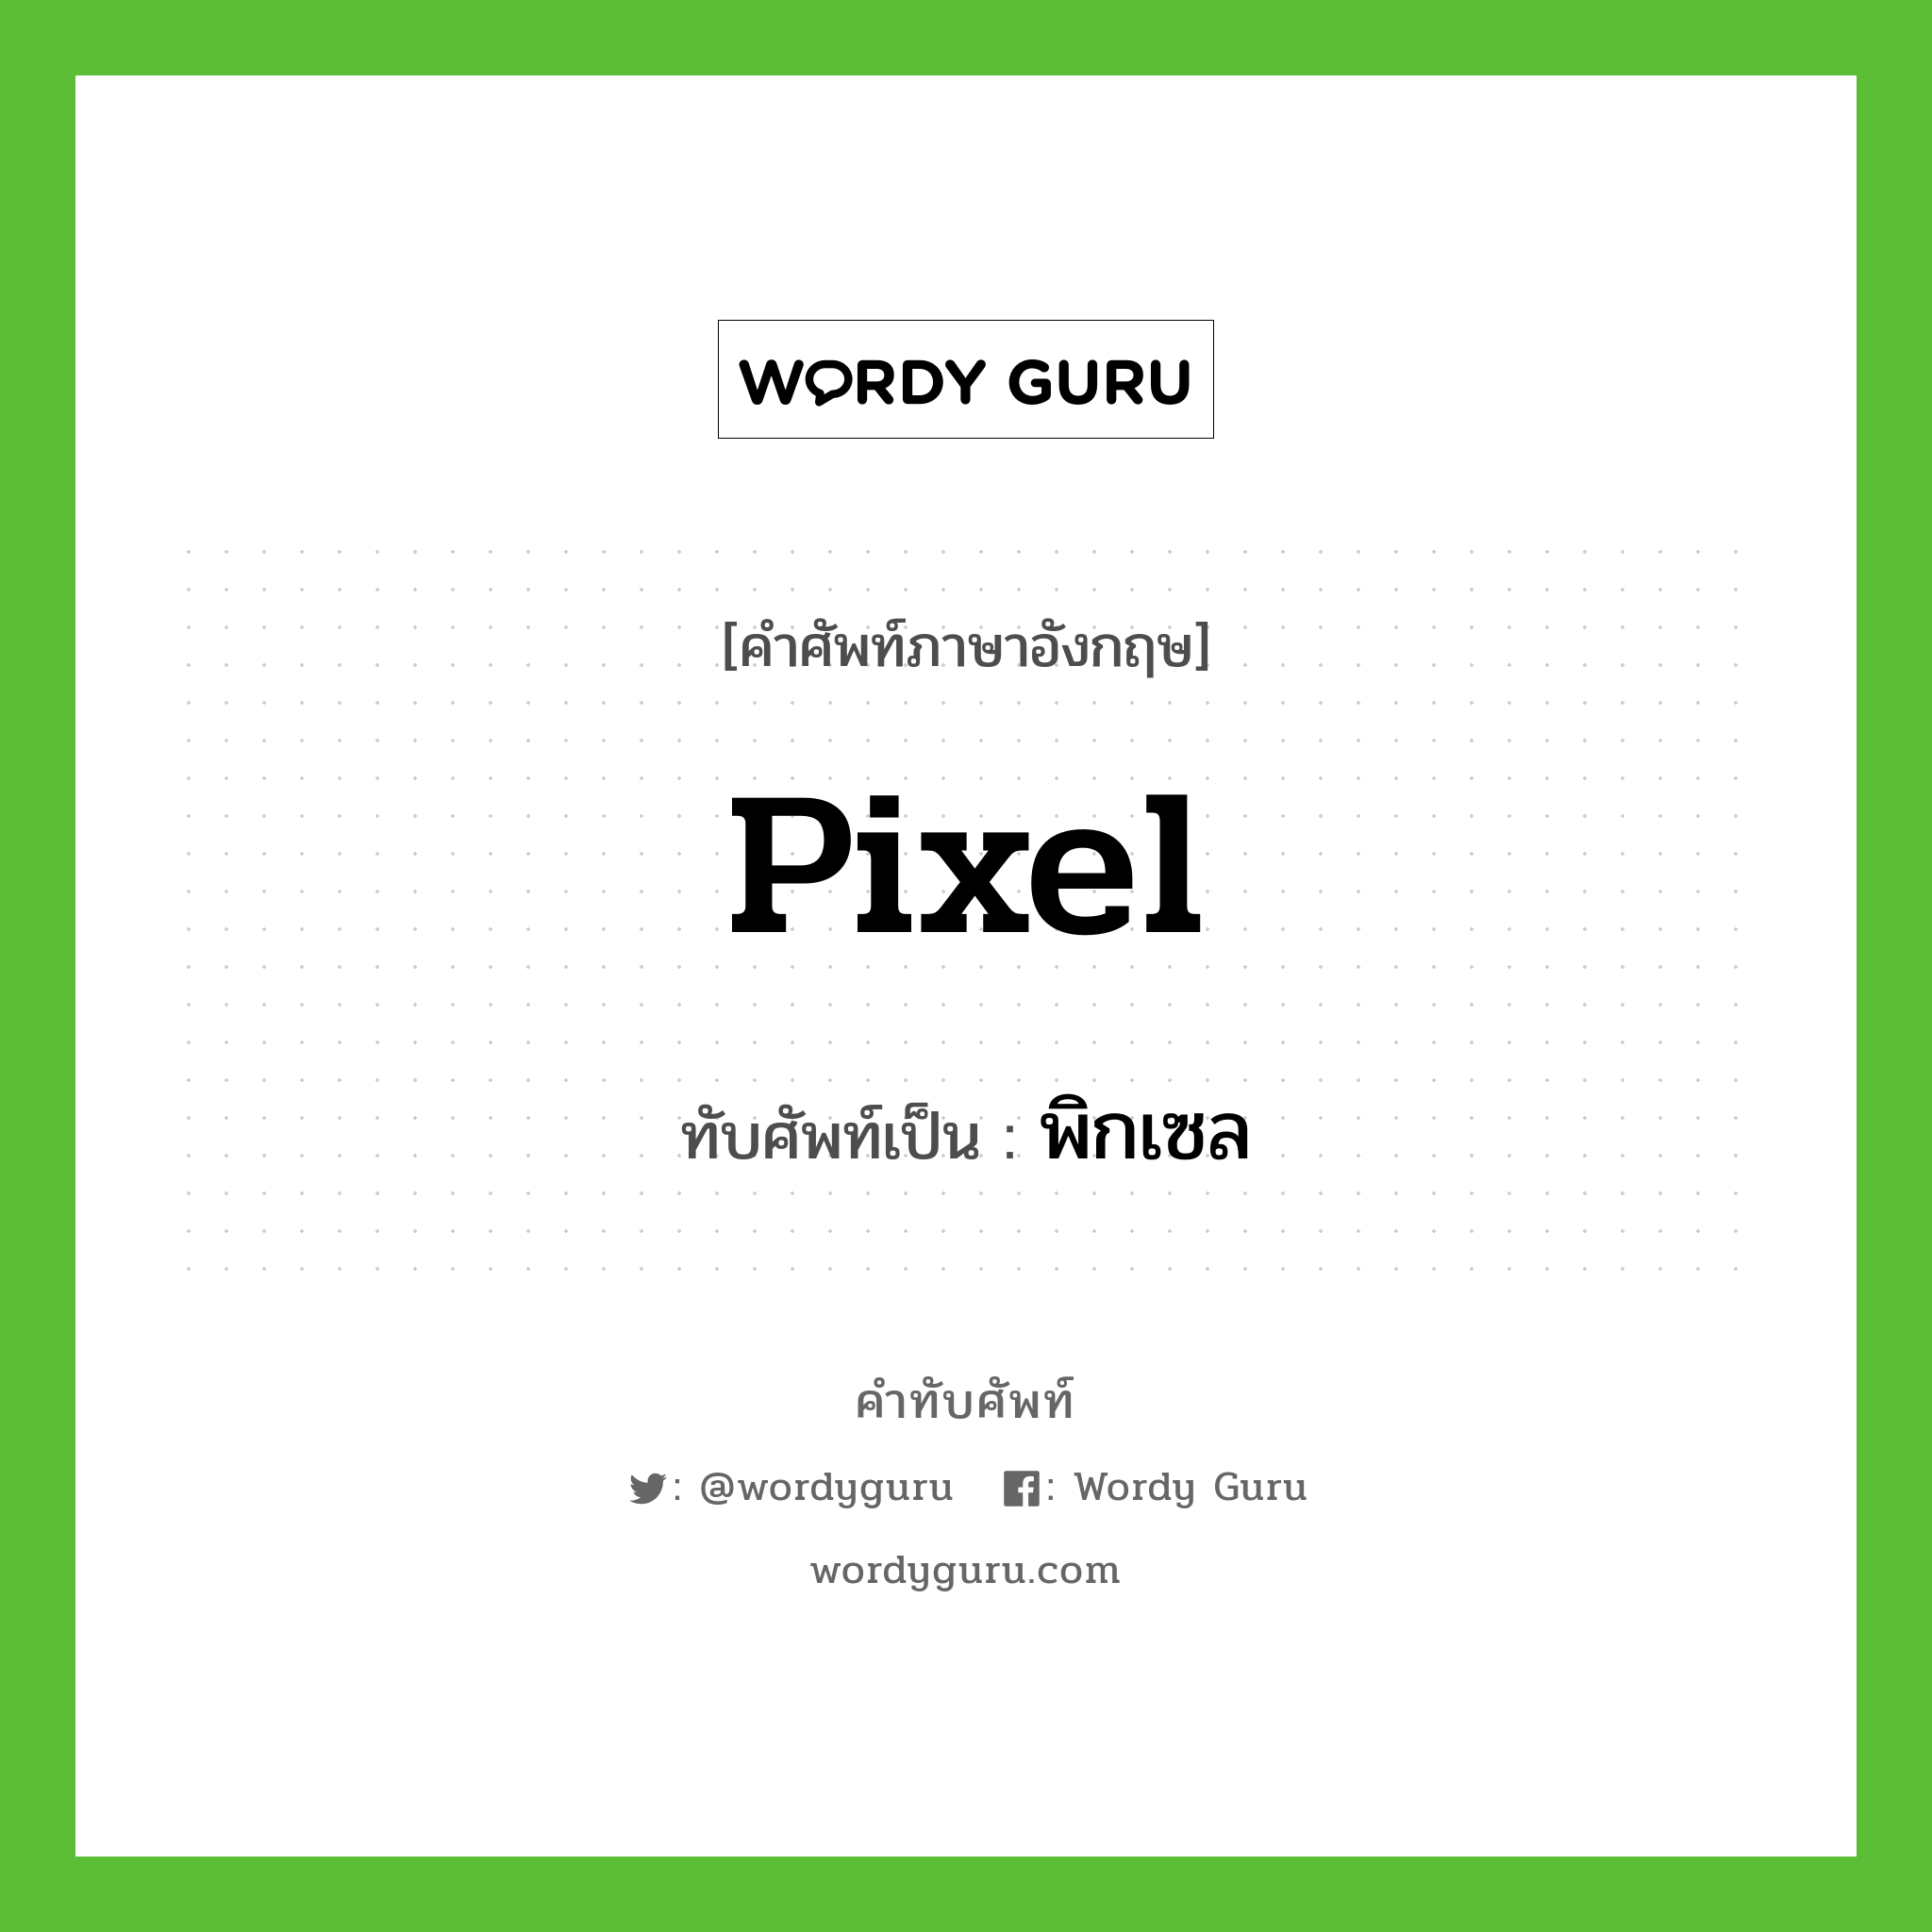 pixel เขียนเป็นคำไทยว่าอะไร?, คำศัพท์ภาษาอังกฤษ pixel ทับศัพท์เป็น พิกเซล